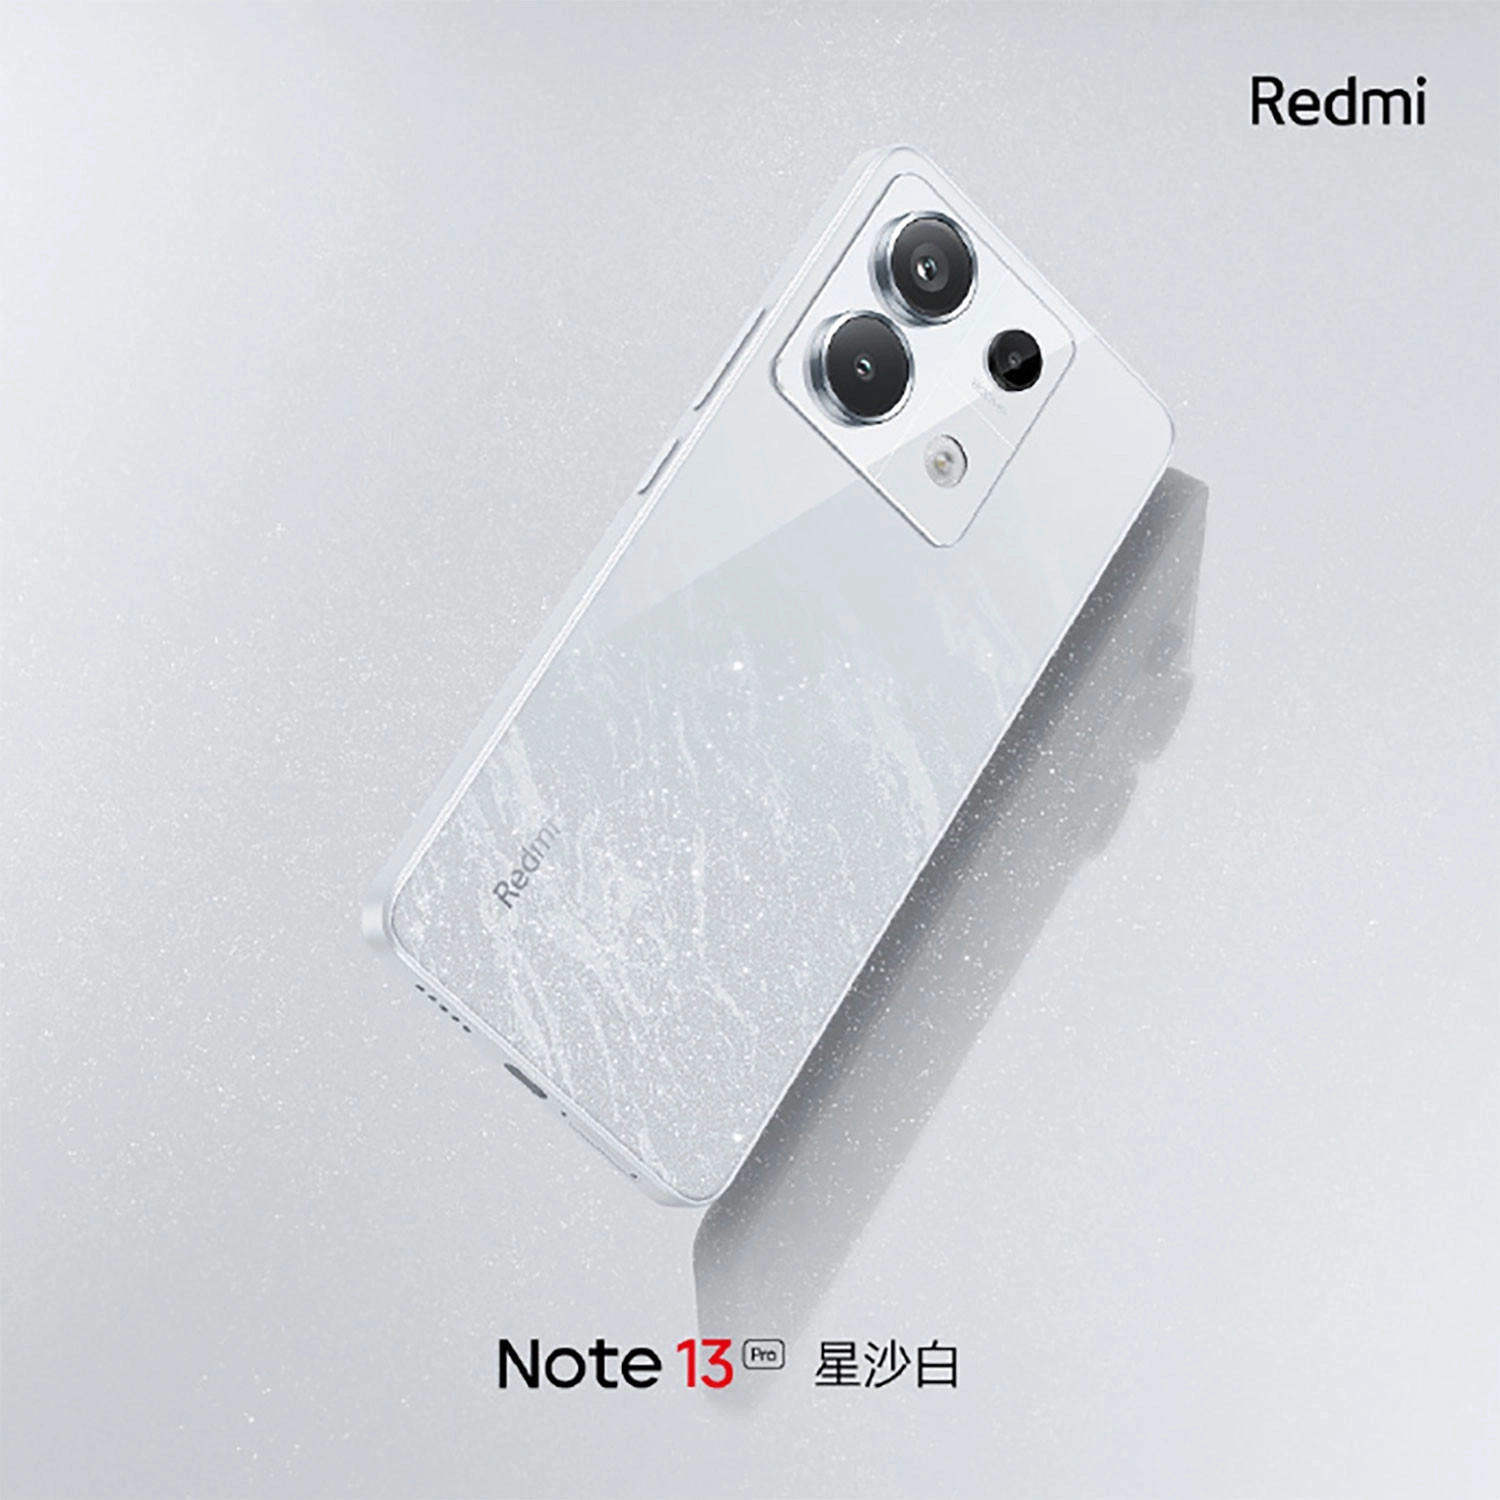  redmi-note-13-pro-ro-ri-1